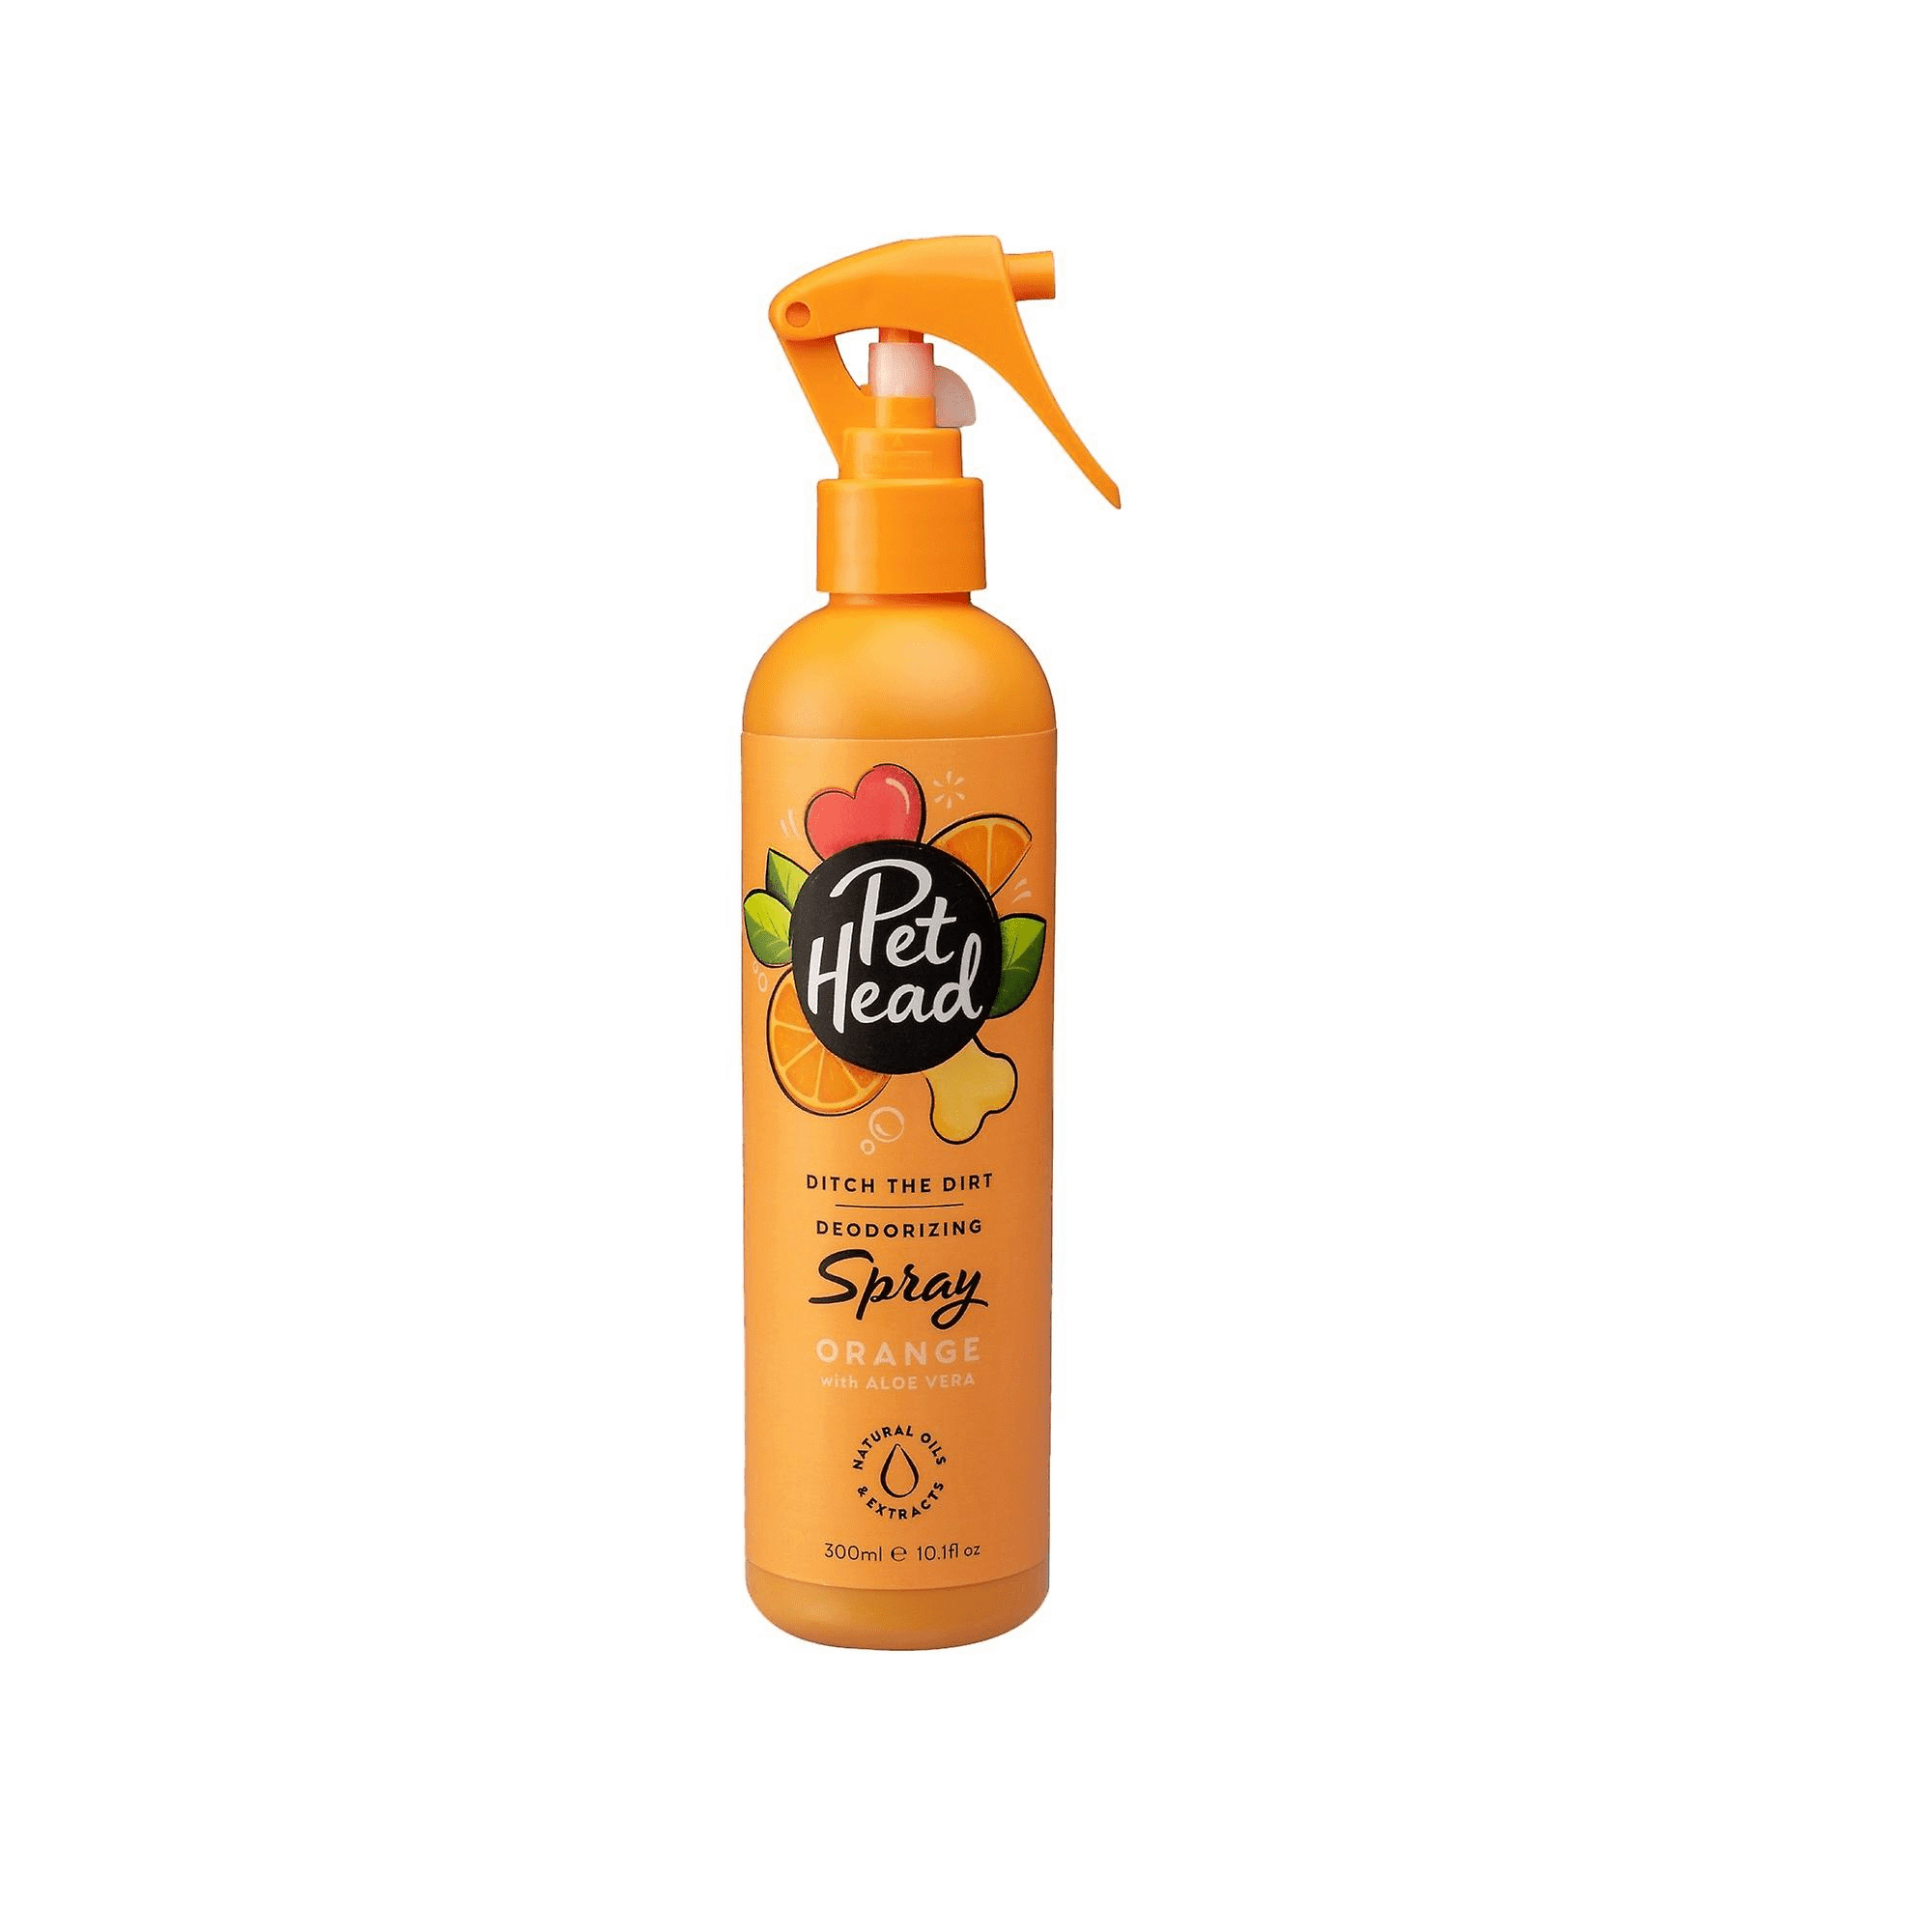 Spray perro - Especial desodorante - 300ml - Ditch The Dirt Pet Head